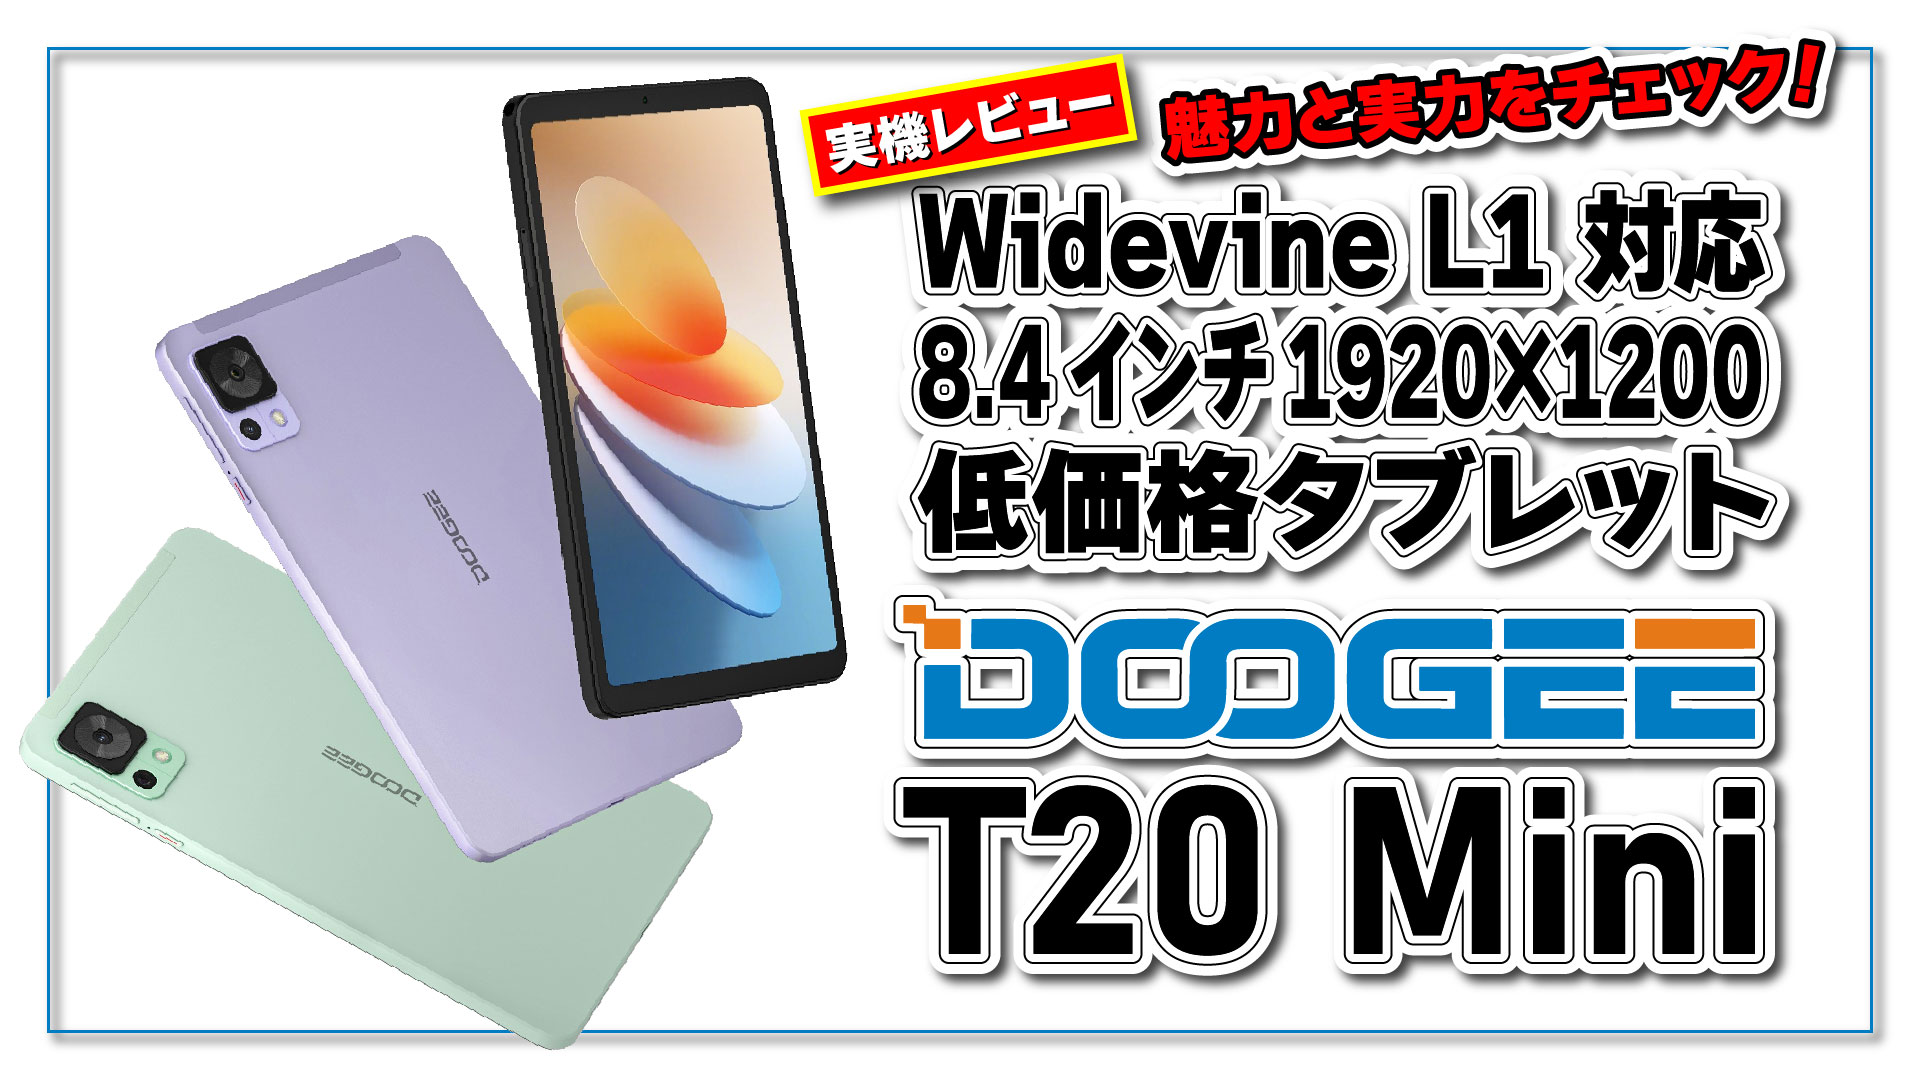 【実機レビュー】新登場! DOOGEE T20 mini の魅力と実力をチェック！Widevine L1 対応 8.4 インチ低価格タブレット